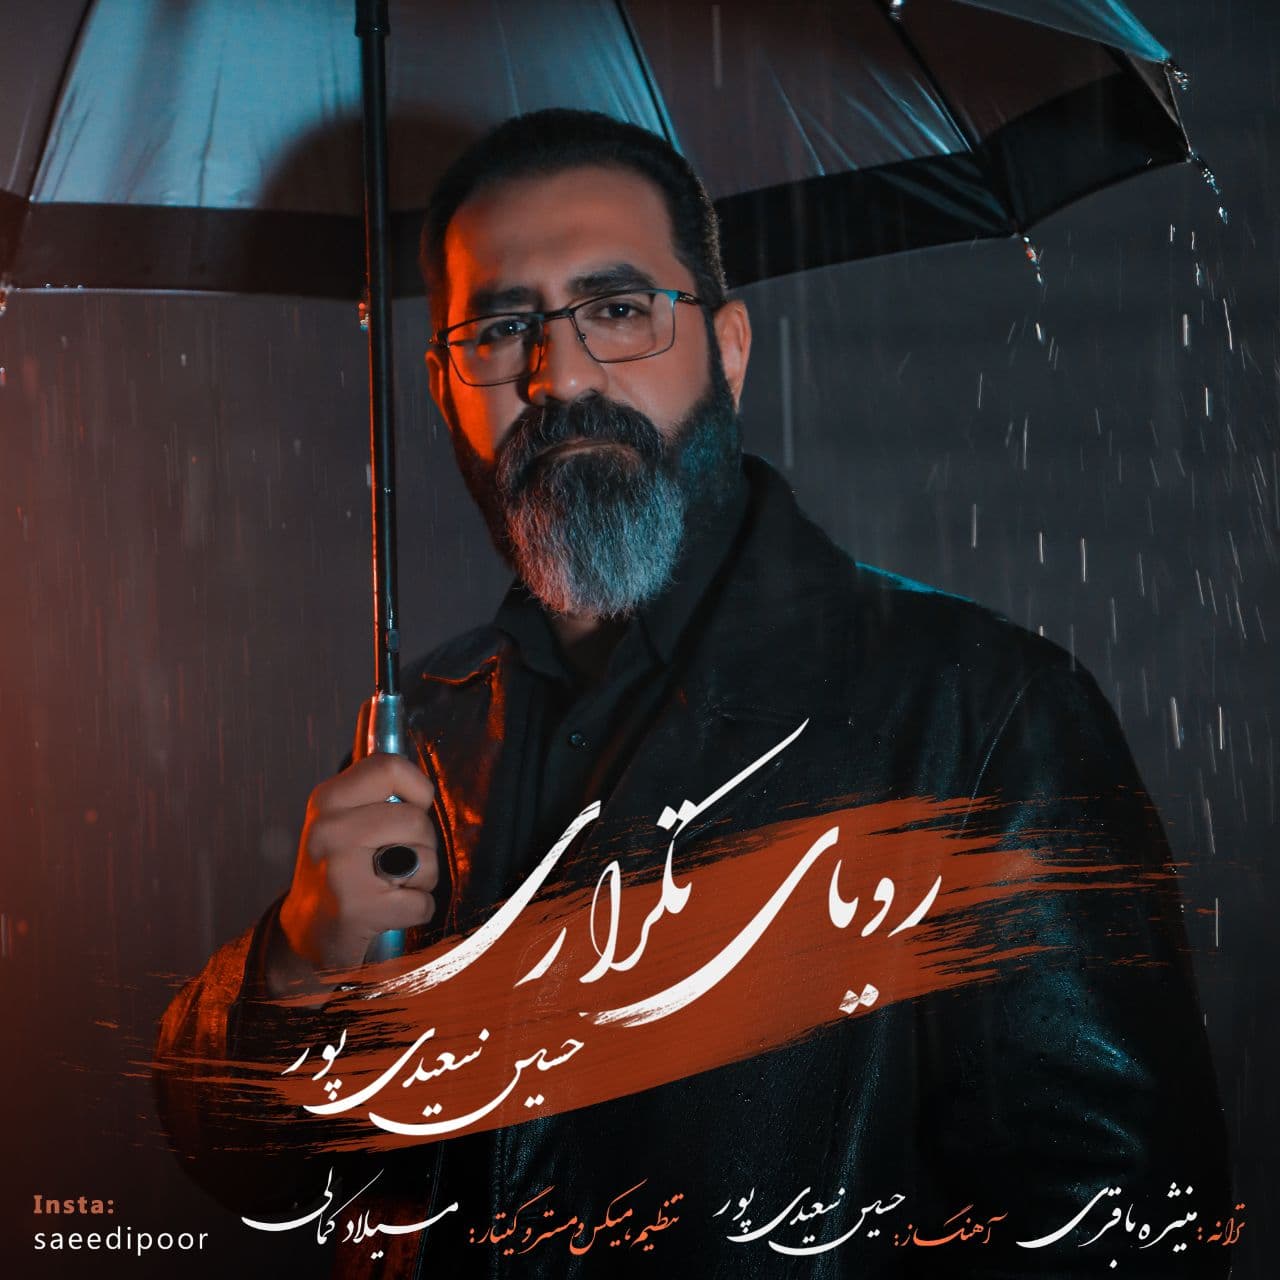 دانلود آهنگ جدید حسین سعیدی پور به نام رویای تکراری